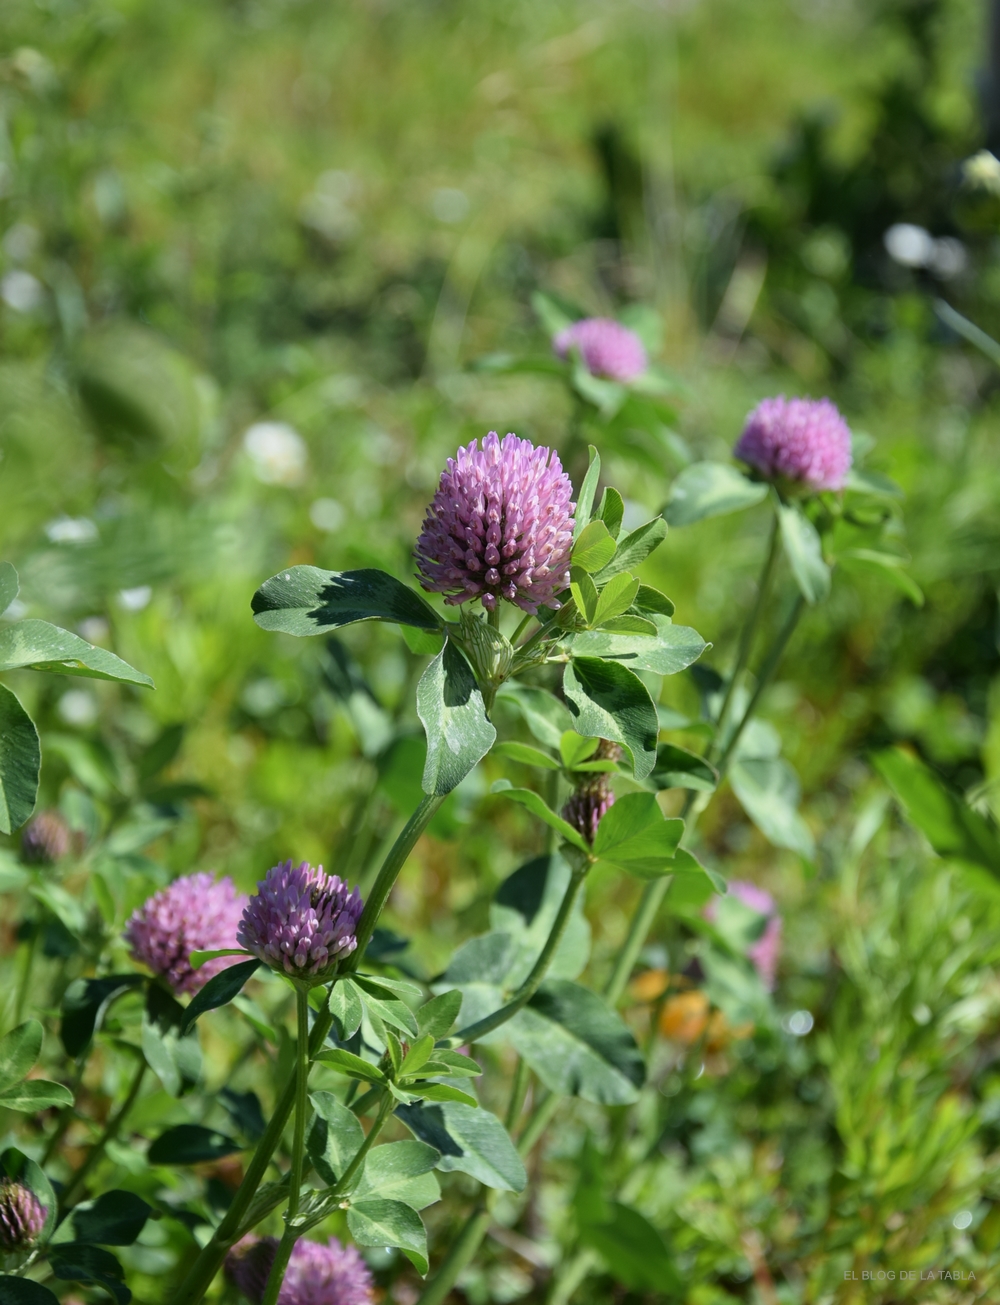 Trifolium pratense (trébol rojo, trébol violeta) herbacea vivaz para praderas de flores silvestres